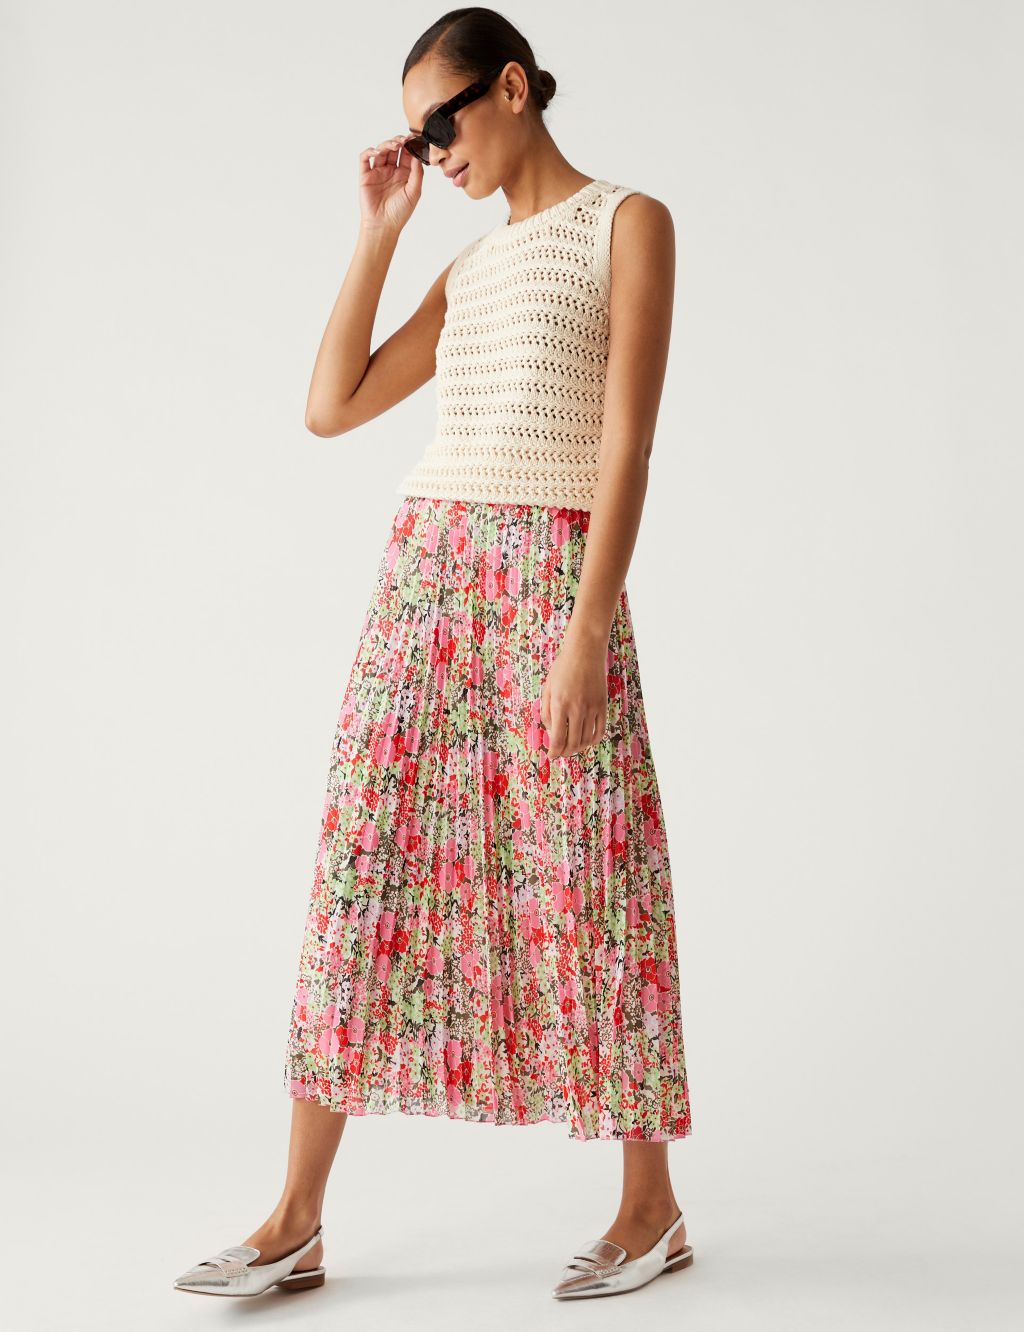 Printed Pleated Midaxi Skirt image 1